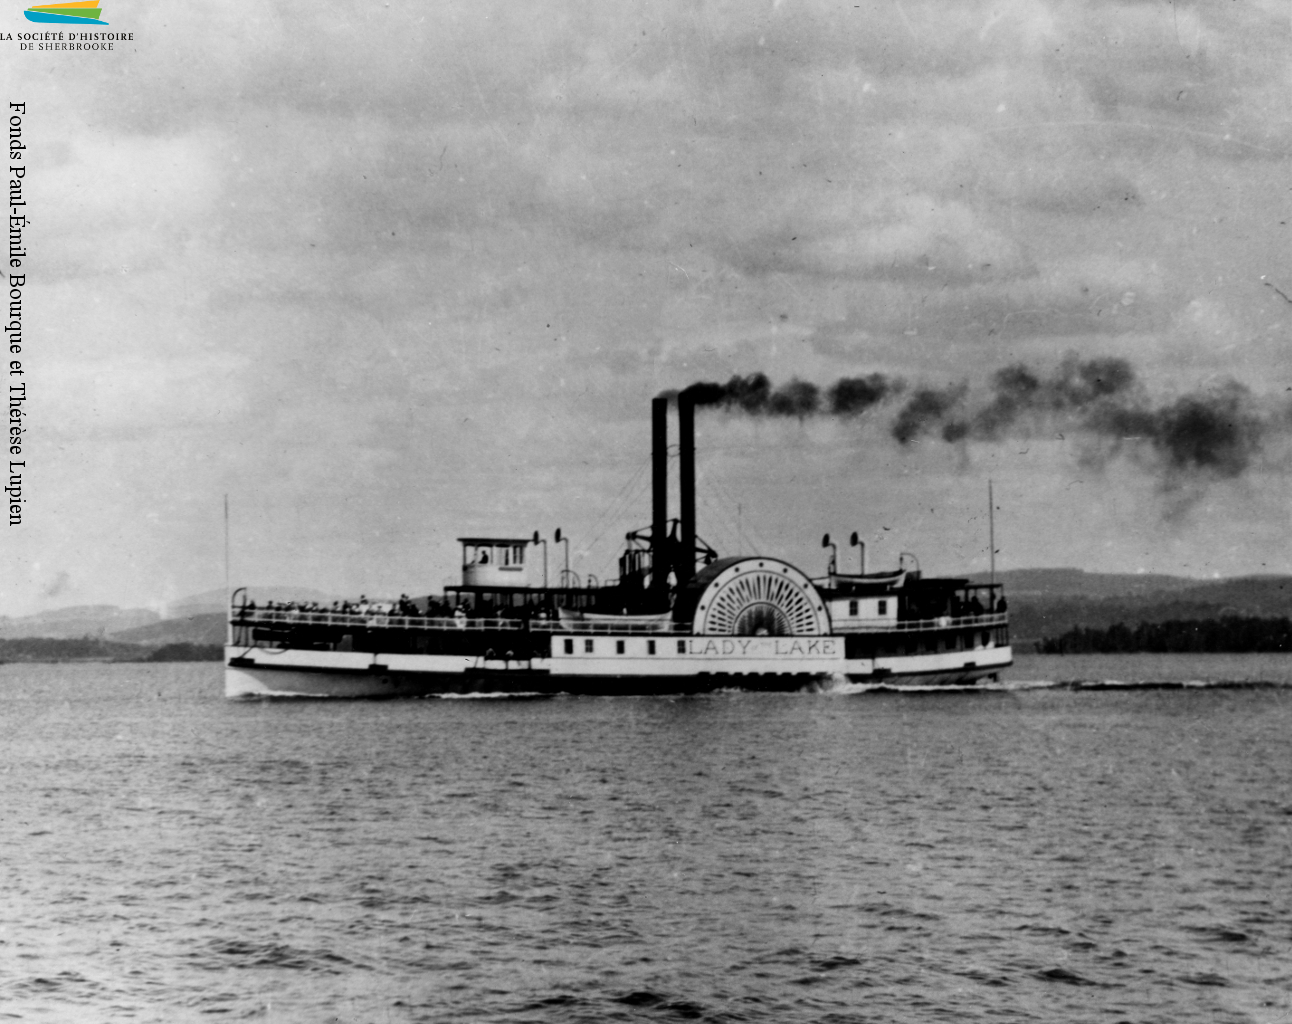 Le bateau à vapeur Lady of the Lake sillonne les eaux du lac Memphrémagog de 1867 à 1917, surtout pour les touristes qui souhaitent y faire de courtes croisières. On le voit ici vers 1895.